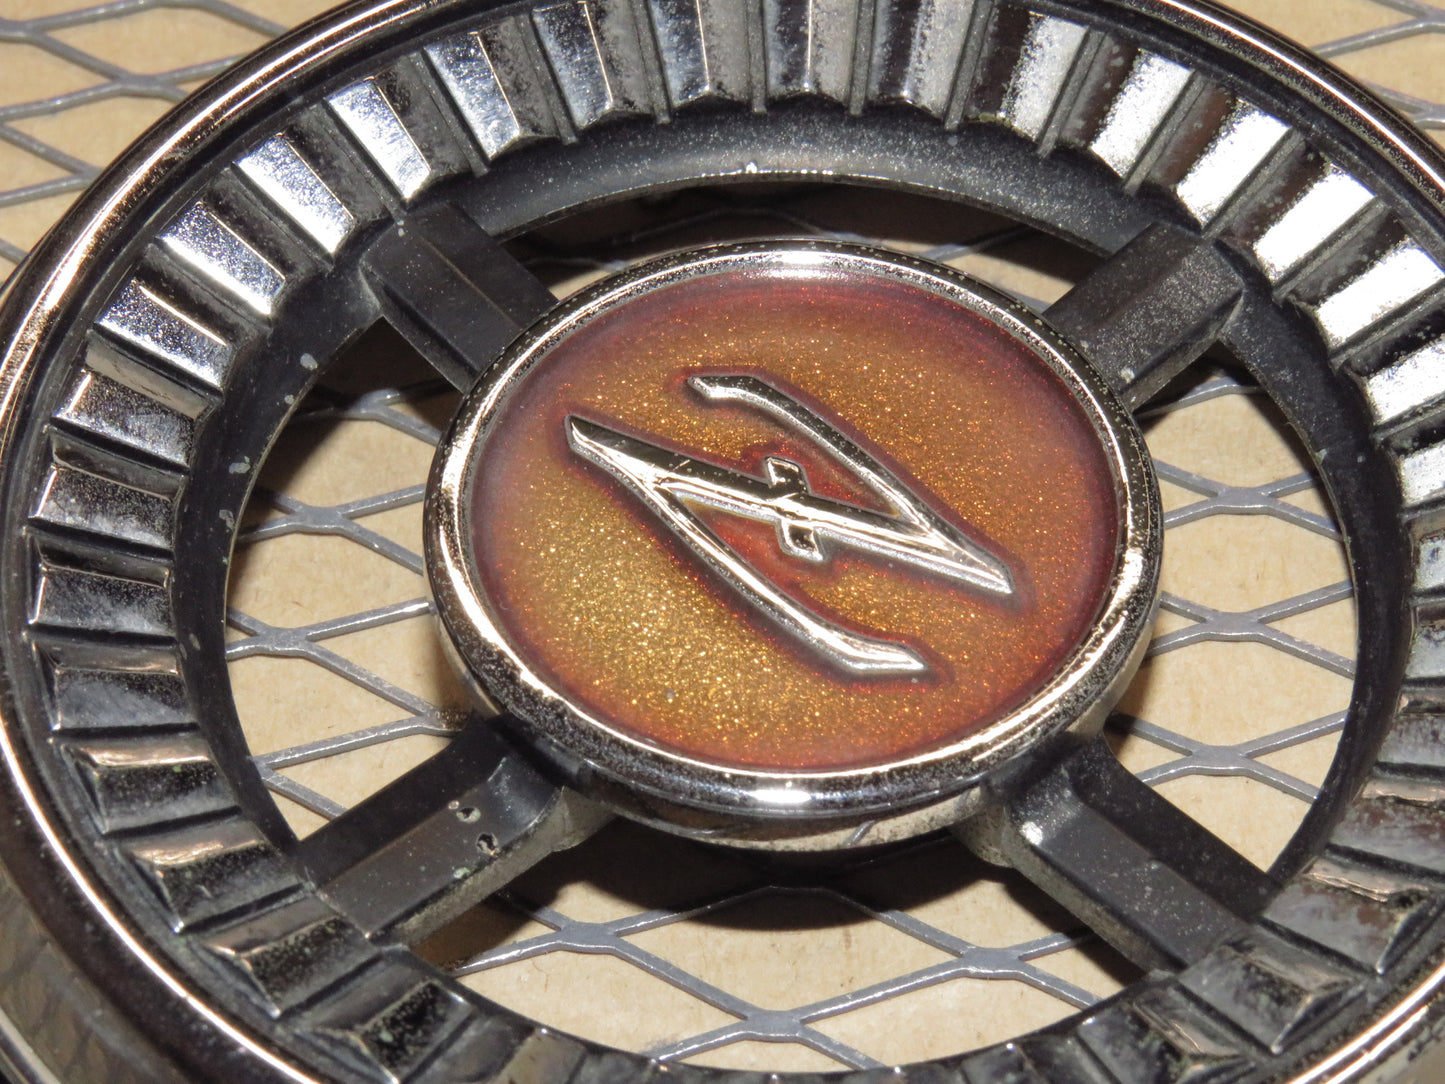 75 76 77 78 Datsun 280z OEM Rear Quarter Panel Badge Emblem - Left